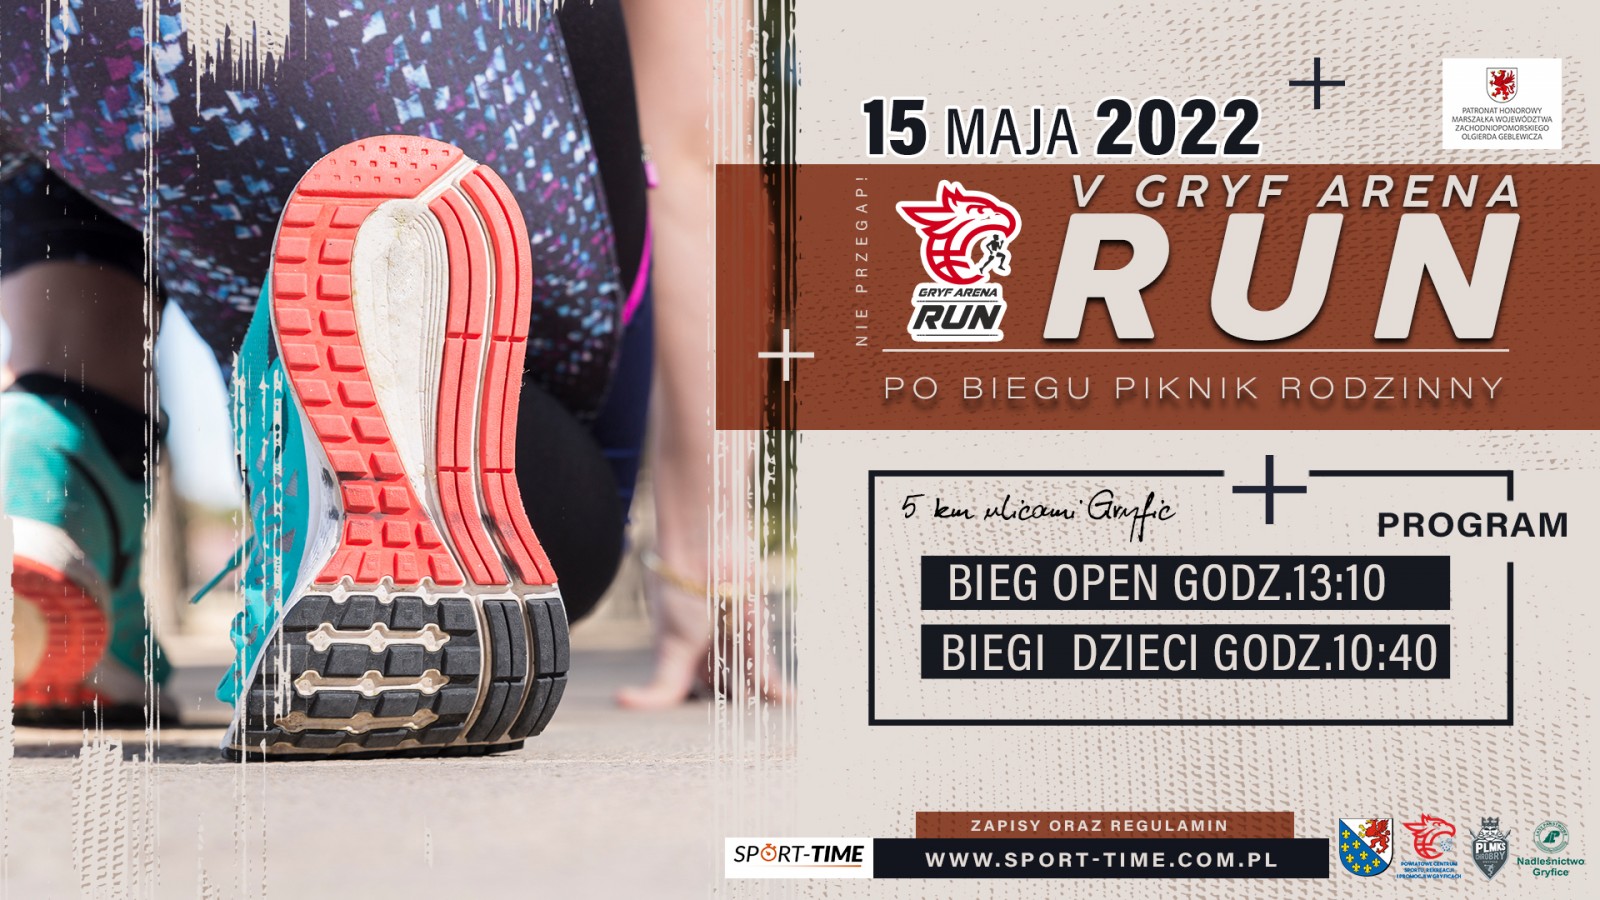 Utrudnienia w ruchu w związku z biegiem V Gryf Arena Run (15.05.2022)